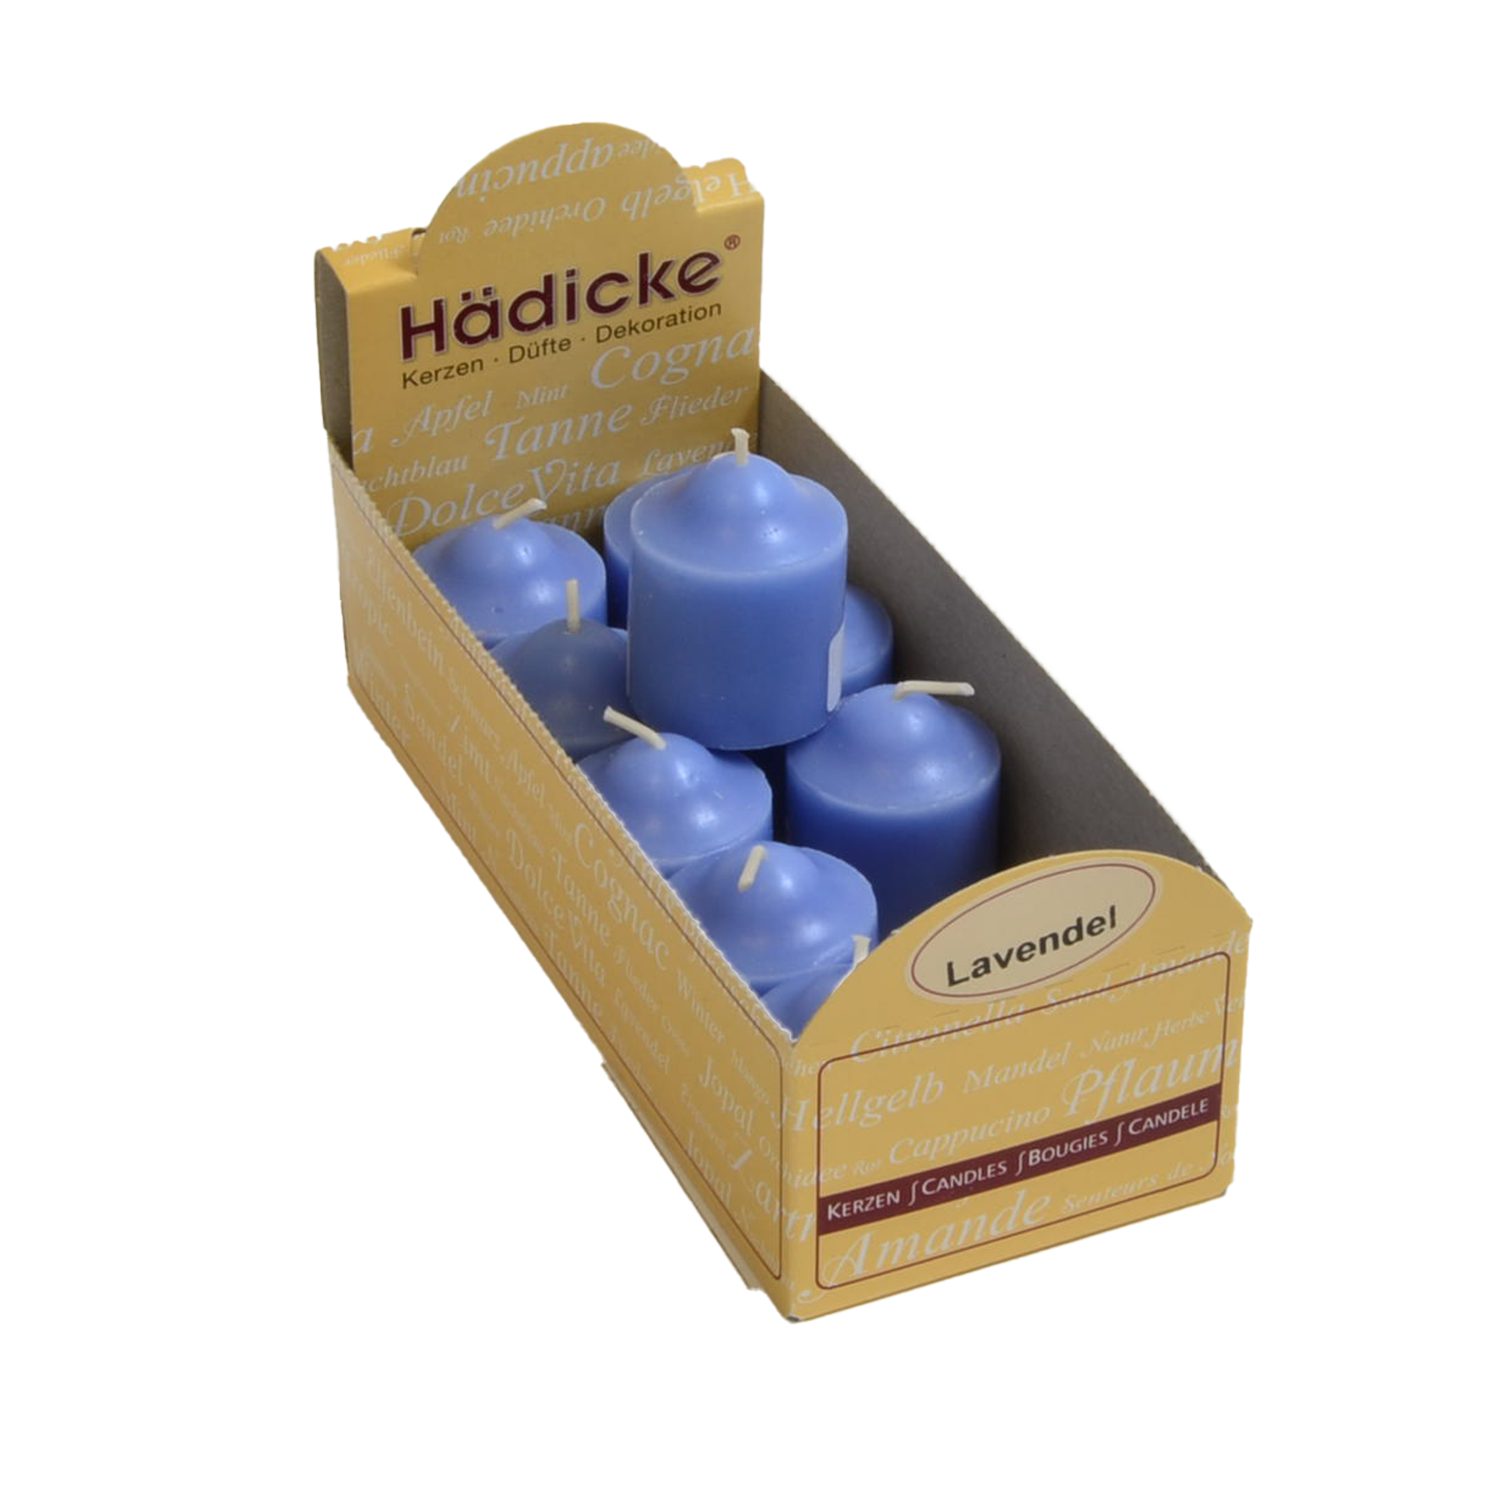 Hädicke Duftkerze Votiv Duftkerze blau Lavendel im 10er Pack intensiv duftend